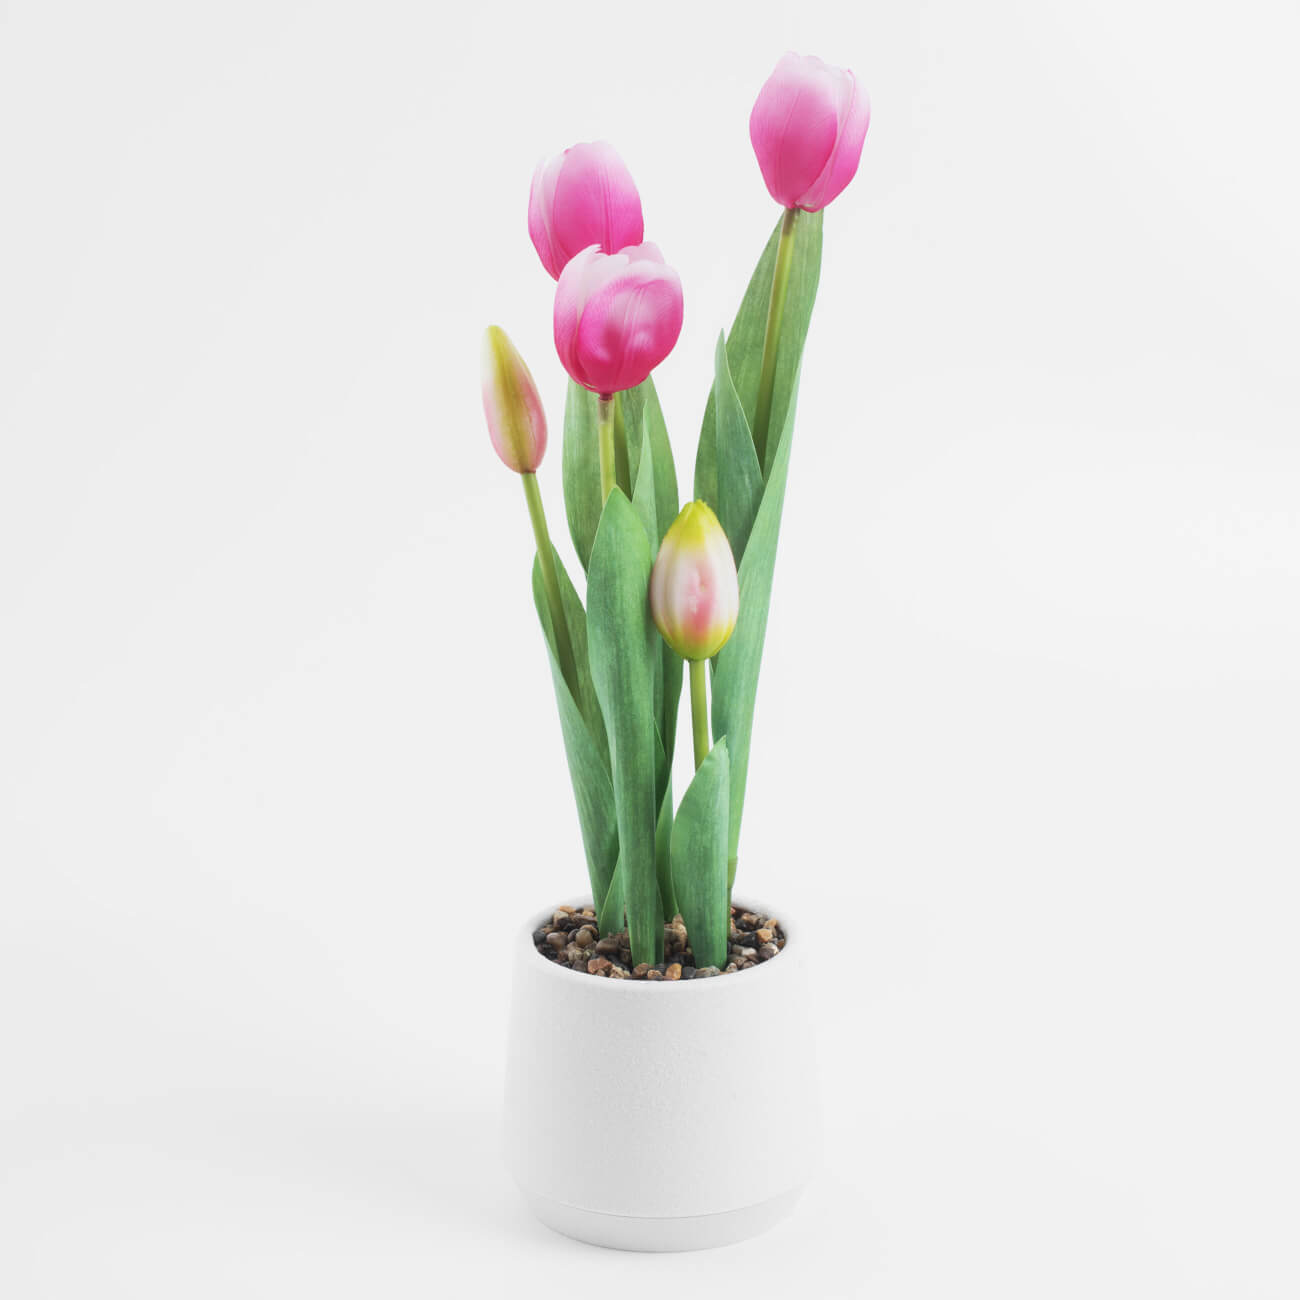 Растение искусственное, 36 см, в горшке, полиэстер/пластик, Розовые тюльпаны, Tulip garden растение искусственное 16 см в крафте полиэстер бумага лаванда lavender